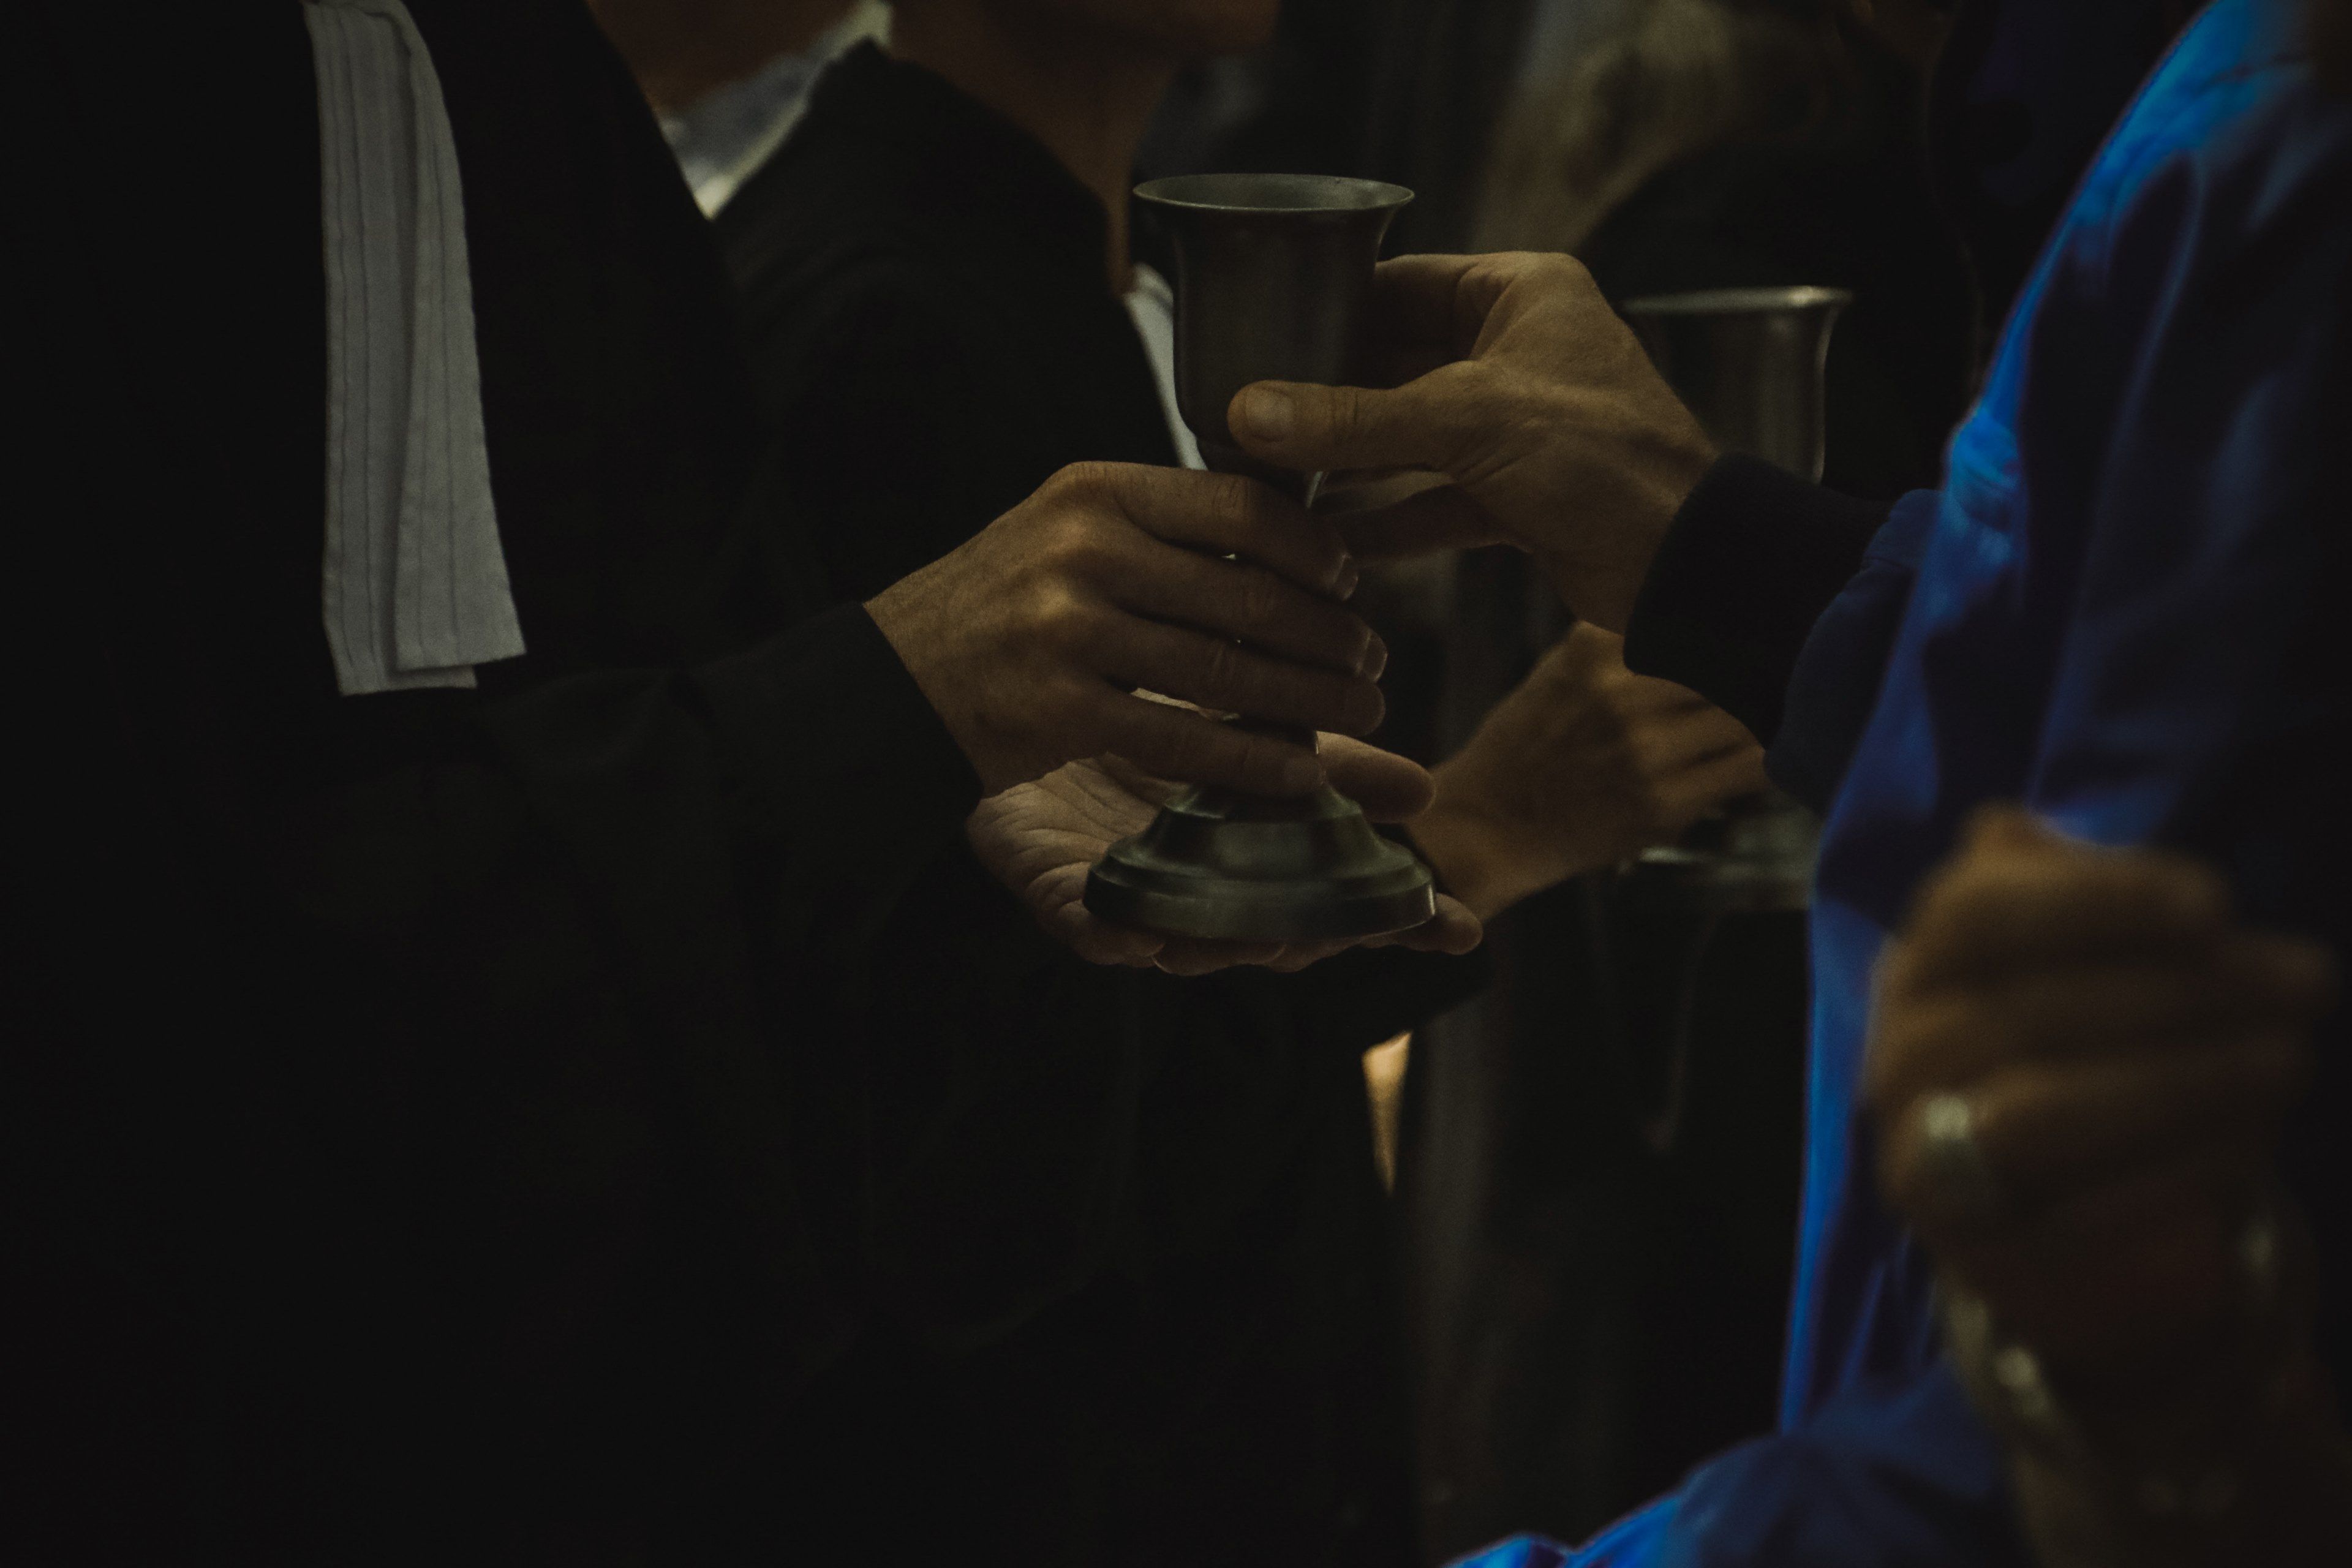 main d'un pasteur passant la coupe à une personne - Photo by Jametlene Reskp on Unsplash